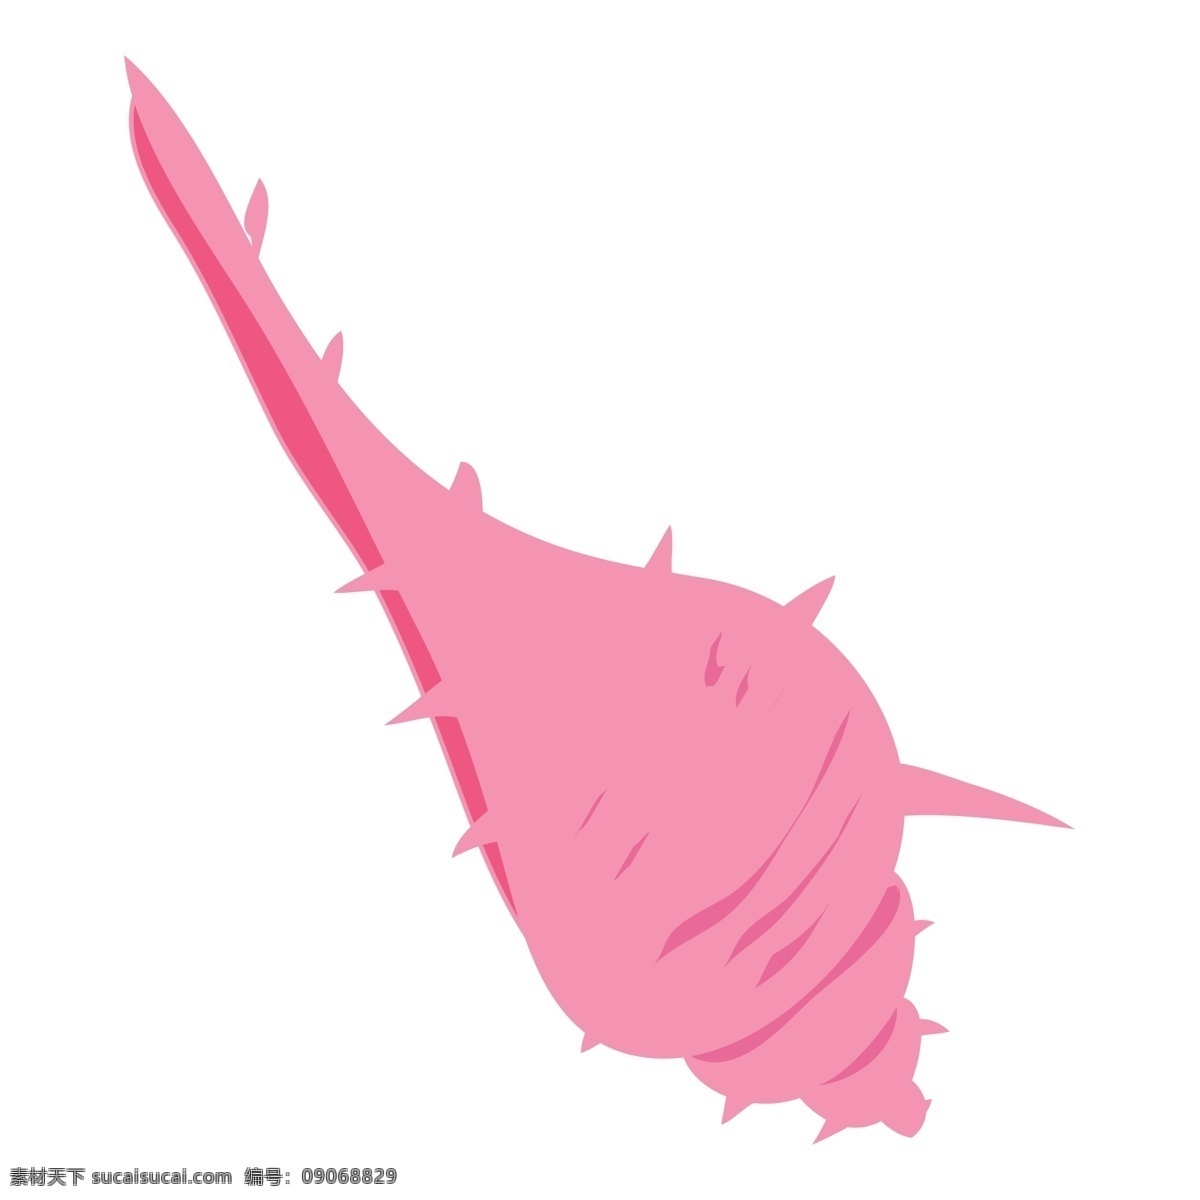 漂亮 海螺 免 抠 图 红色的海螺 真好看 红通通 粉红色的海螺 卡通插画 艺术插画 漂亮的海螺 海鲜